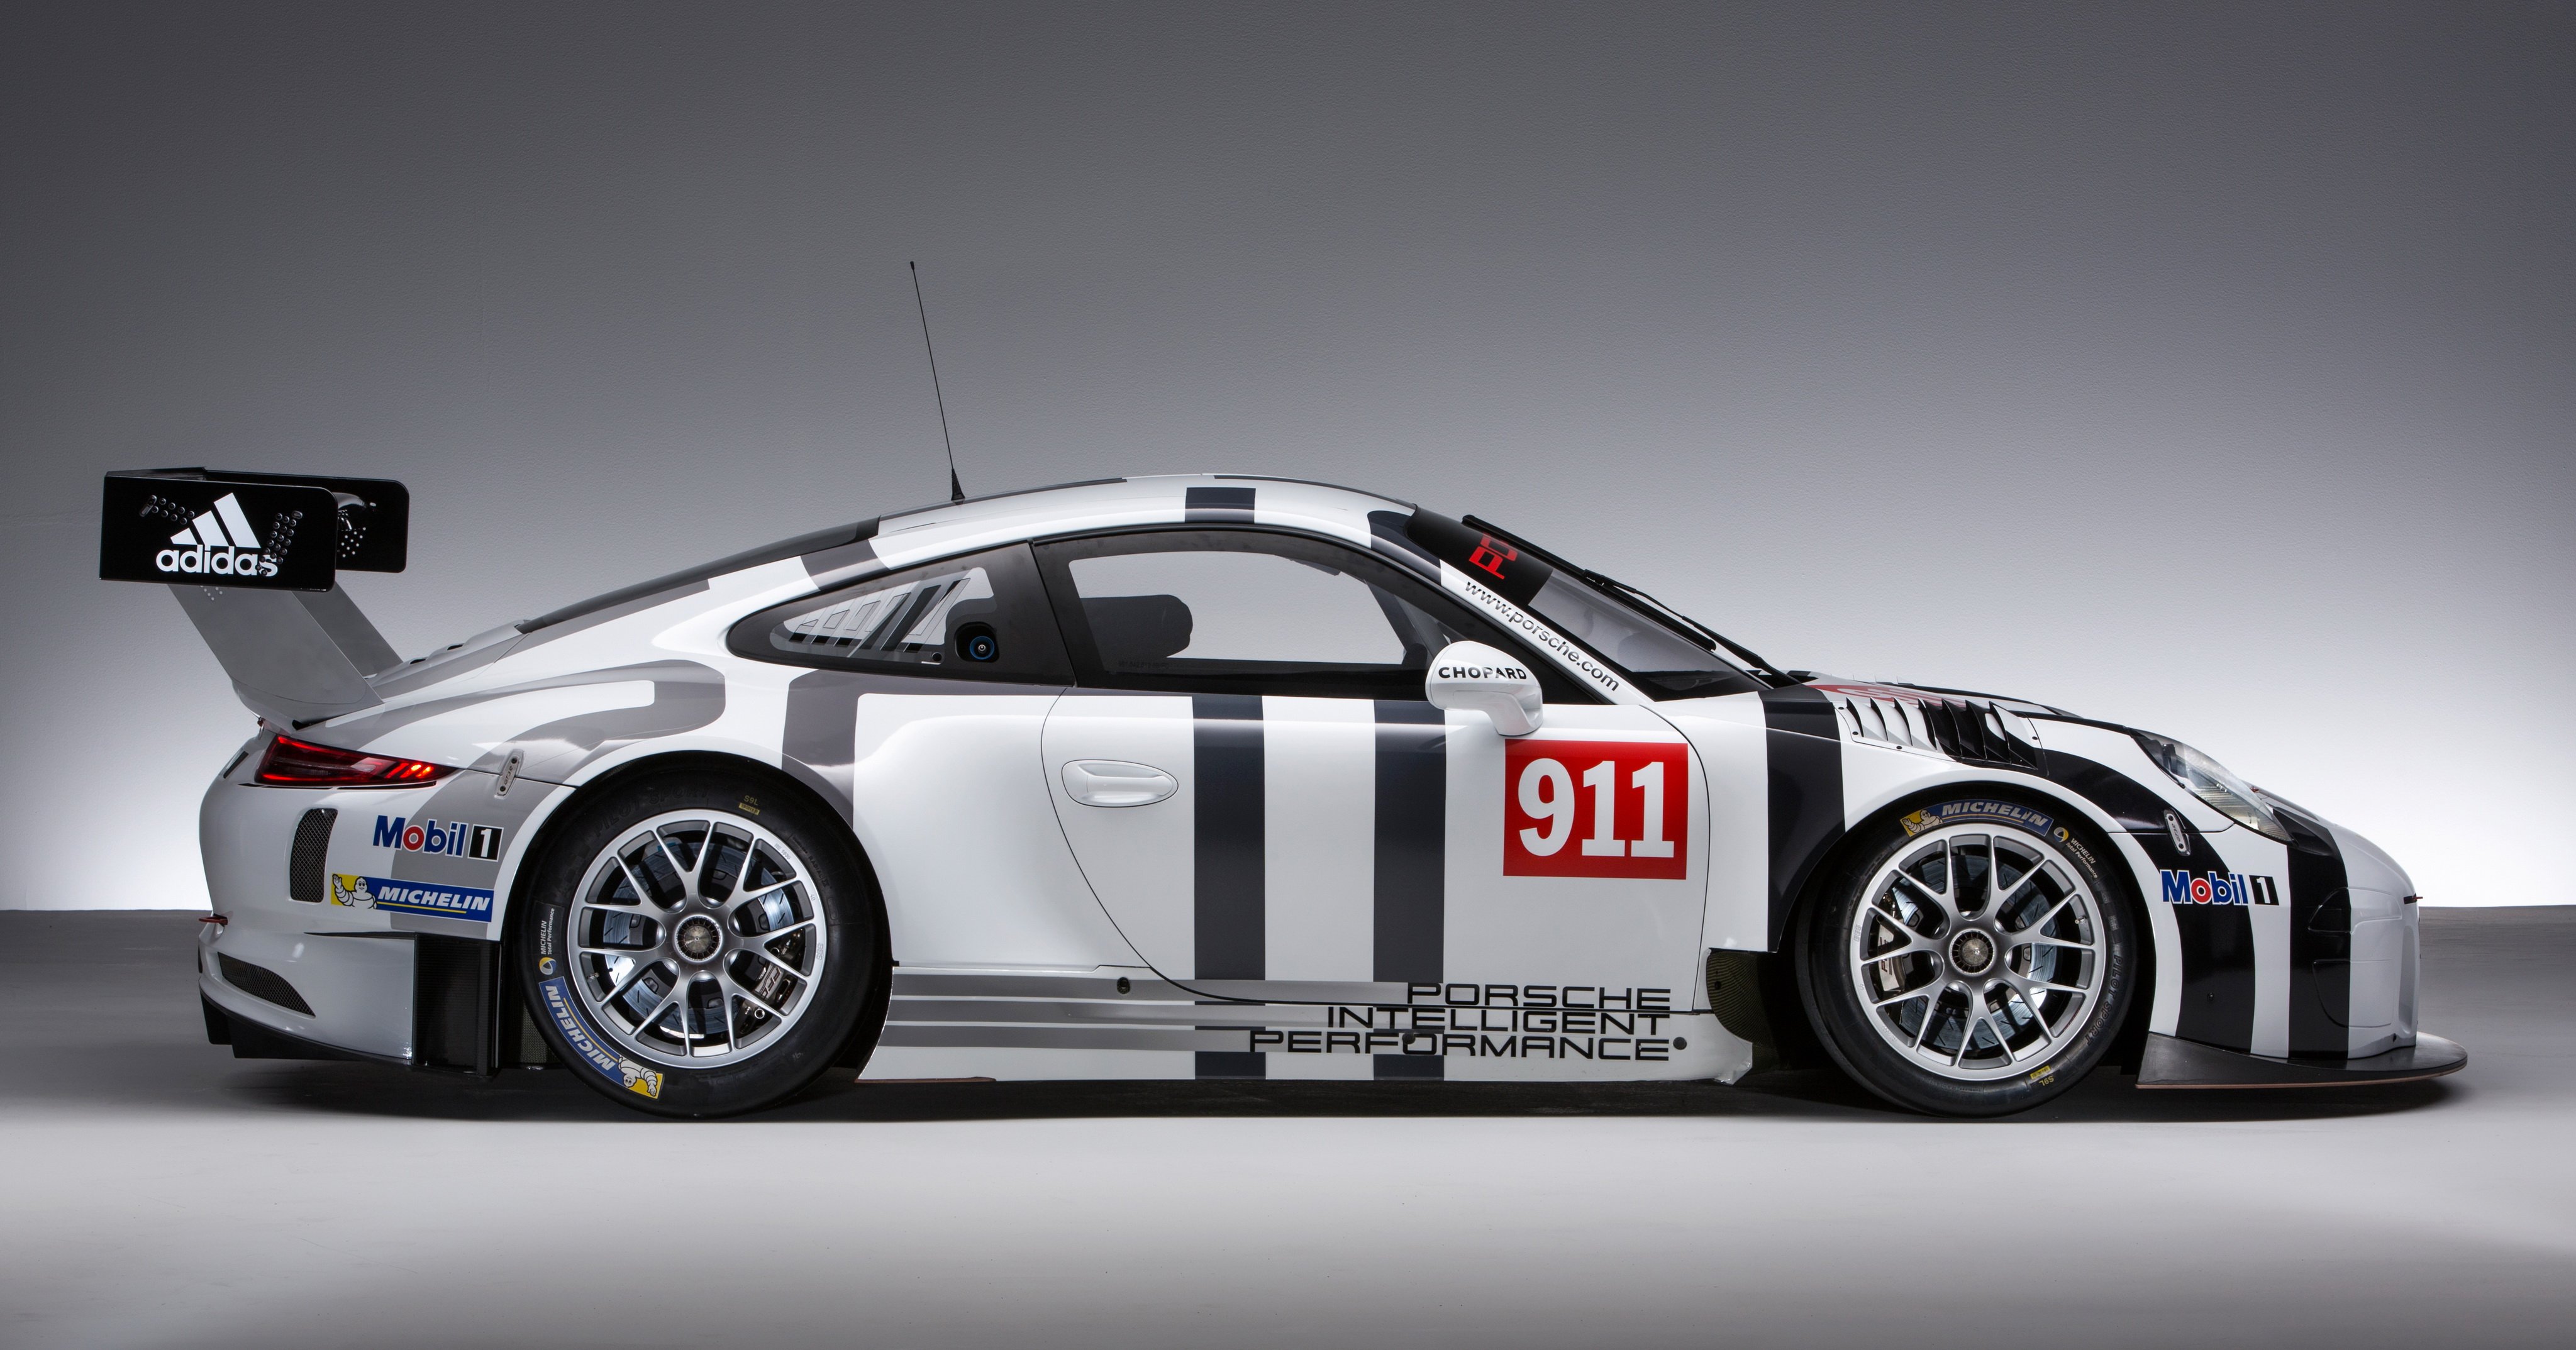 2016, Porsche, 911, Gt3, R, 991, Race, Racing Wallpaper